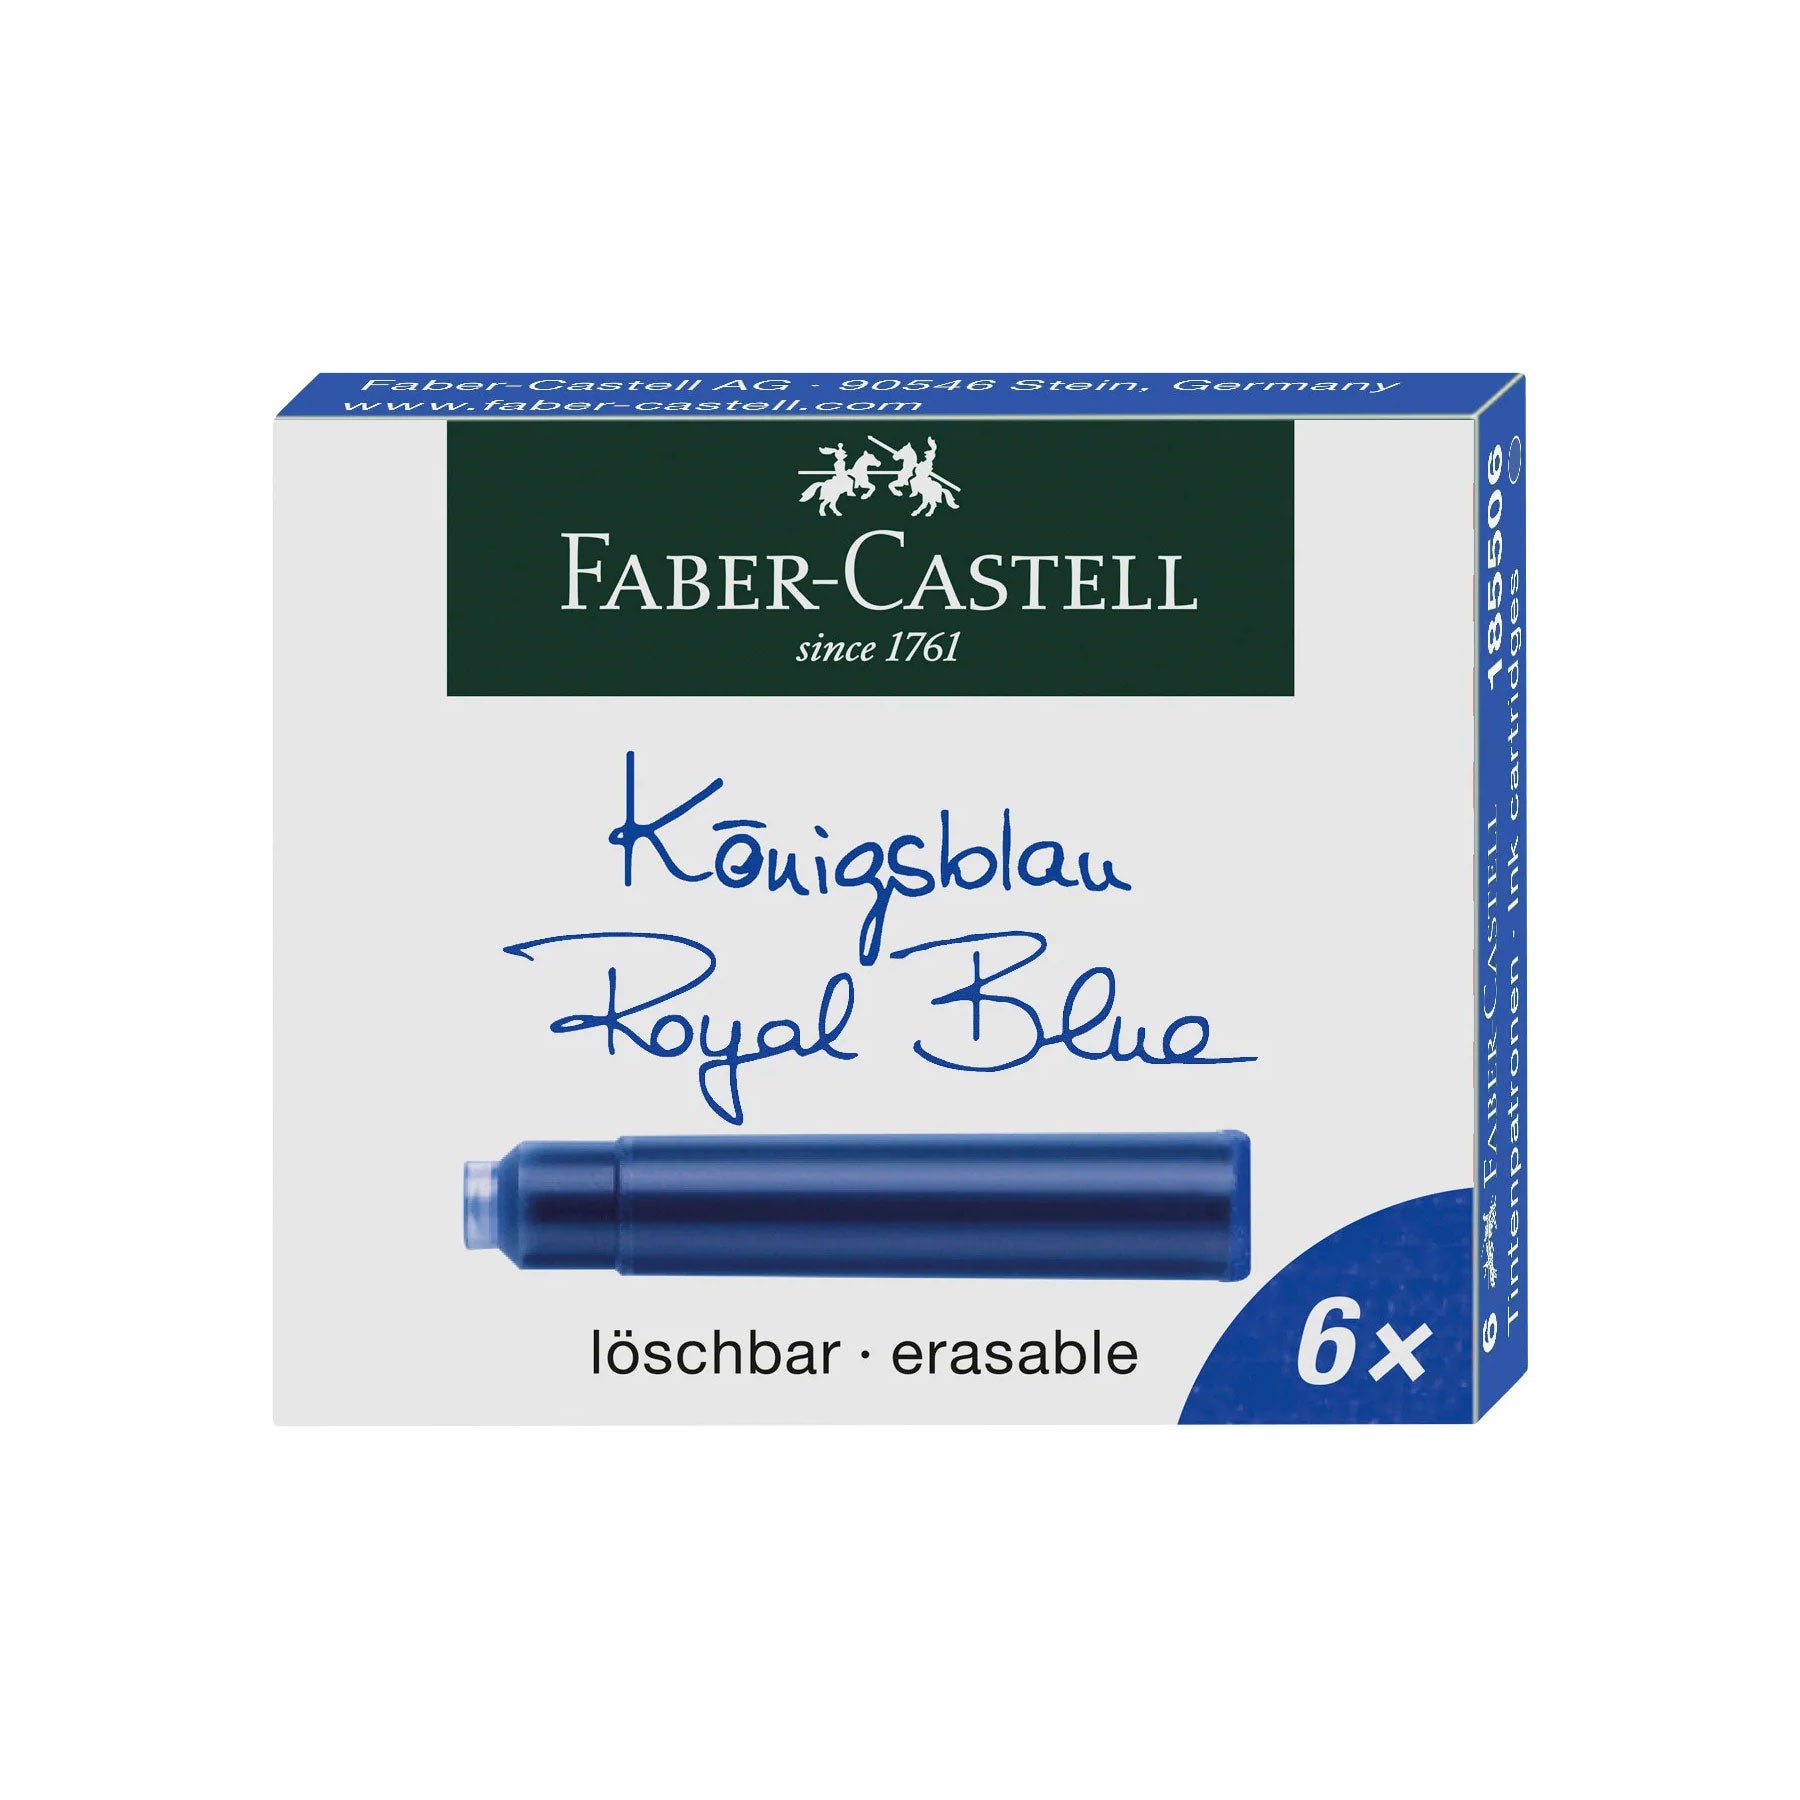 Faber-Castell Refills Fountain Pen Ink Cartridges